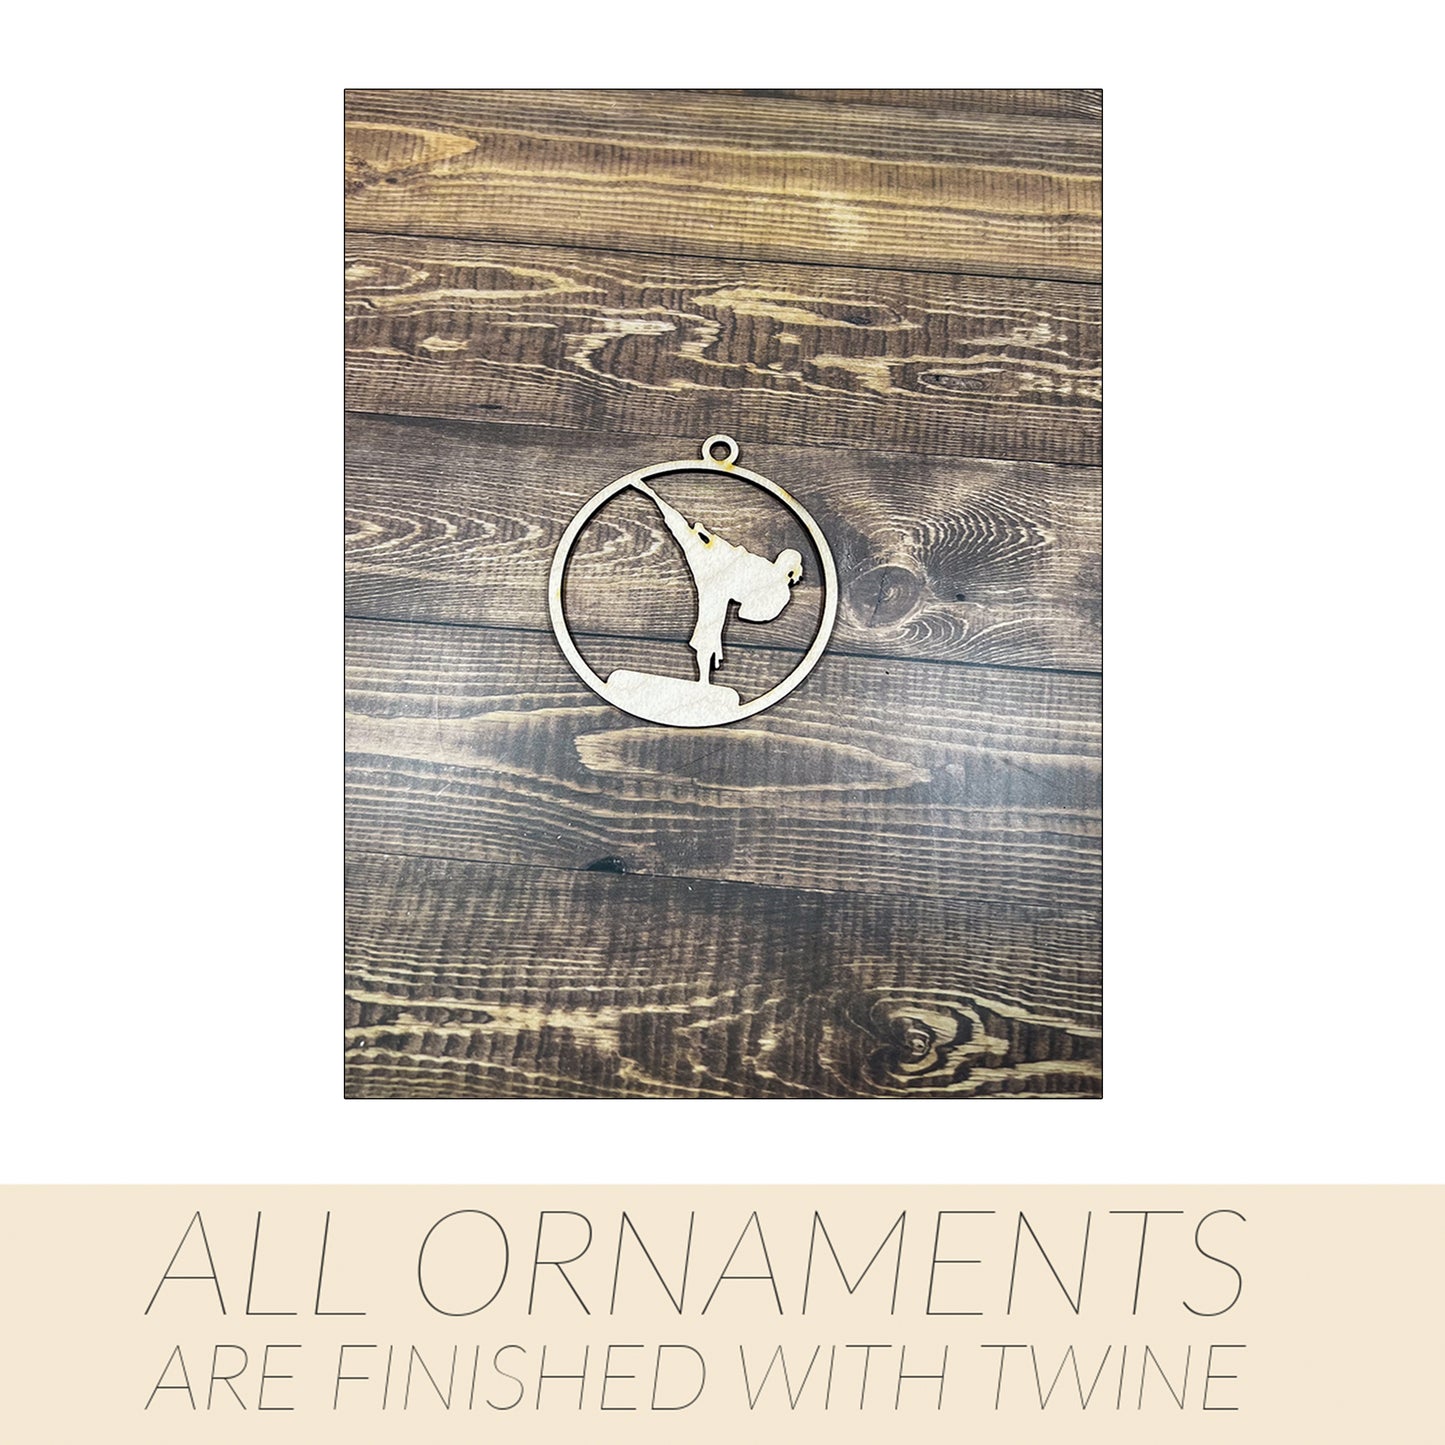 Karate Ornament, Wooden Sports Ornament, Sports Ornament, Engraved Ornament, Laser Engraved Wood Ornament